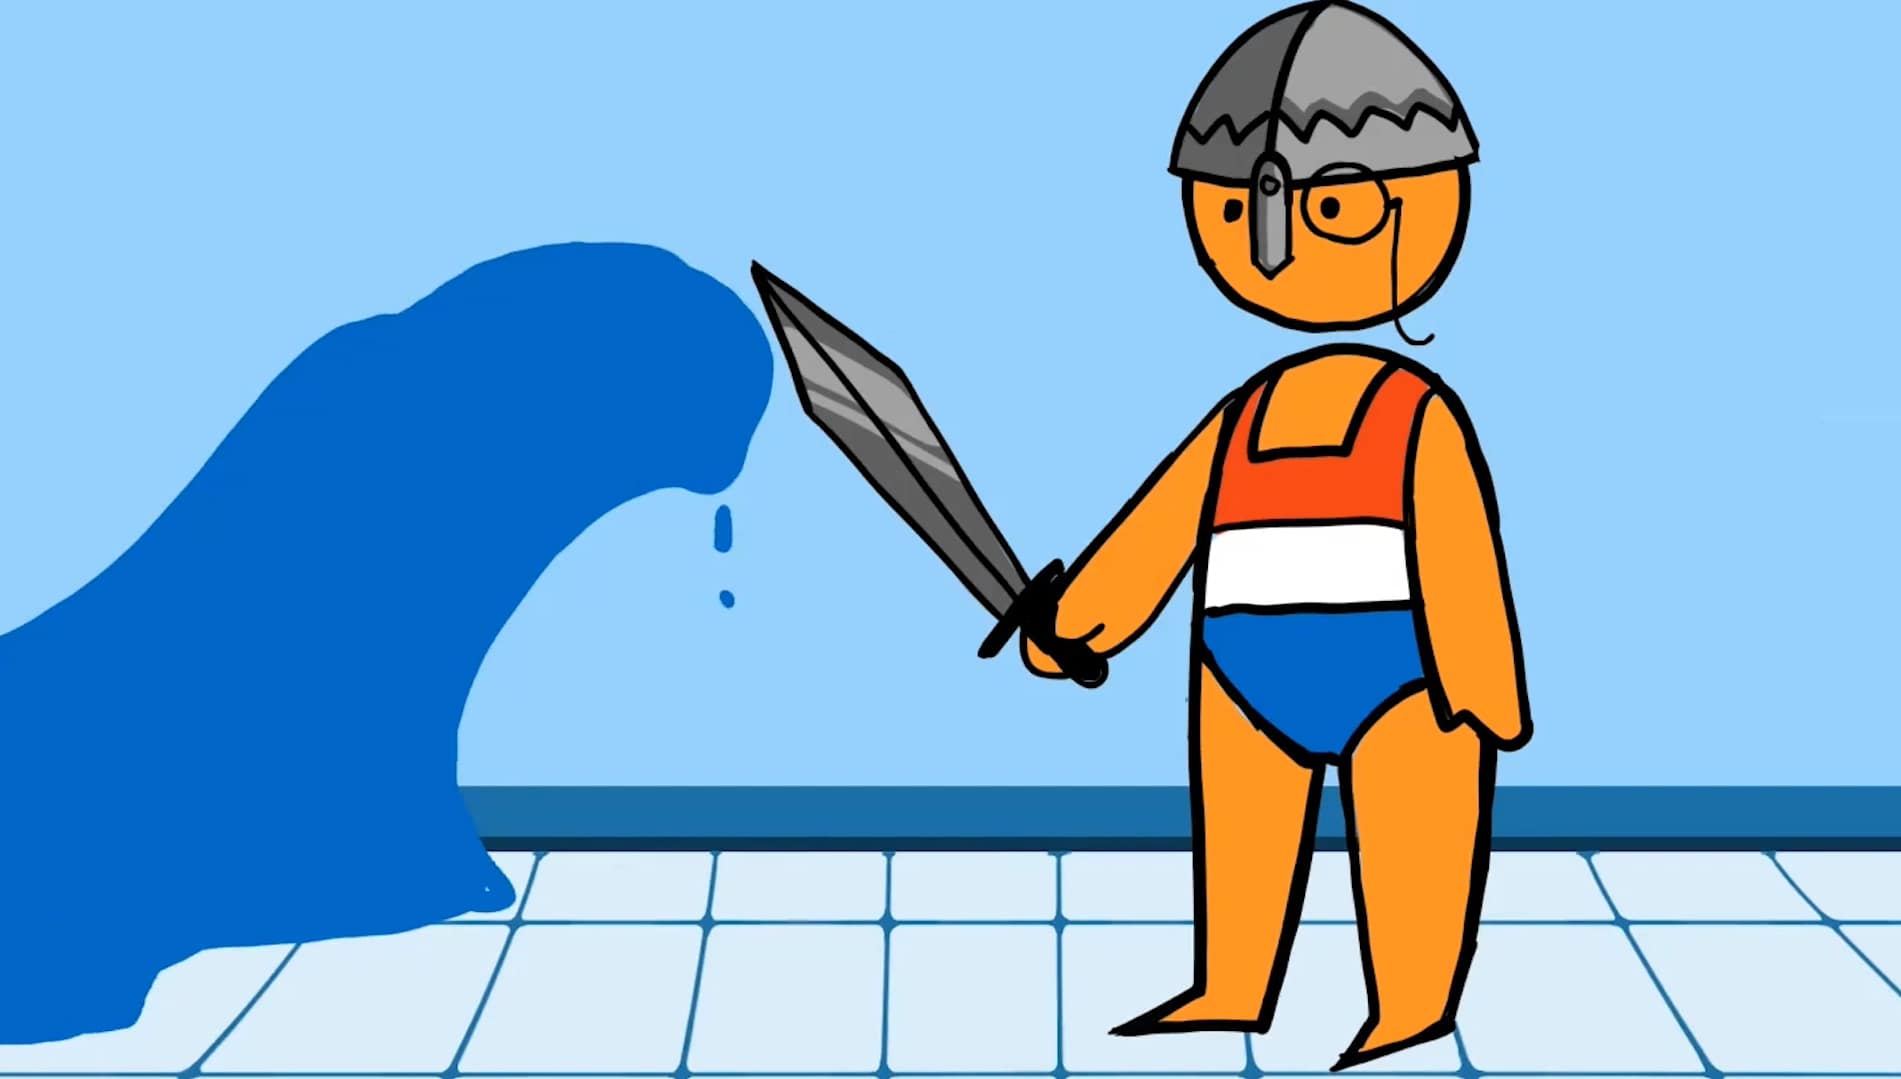 Netherlands cartoon figure with sword and helmet